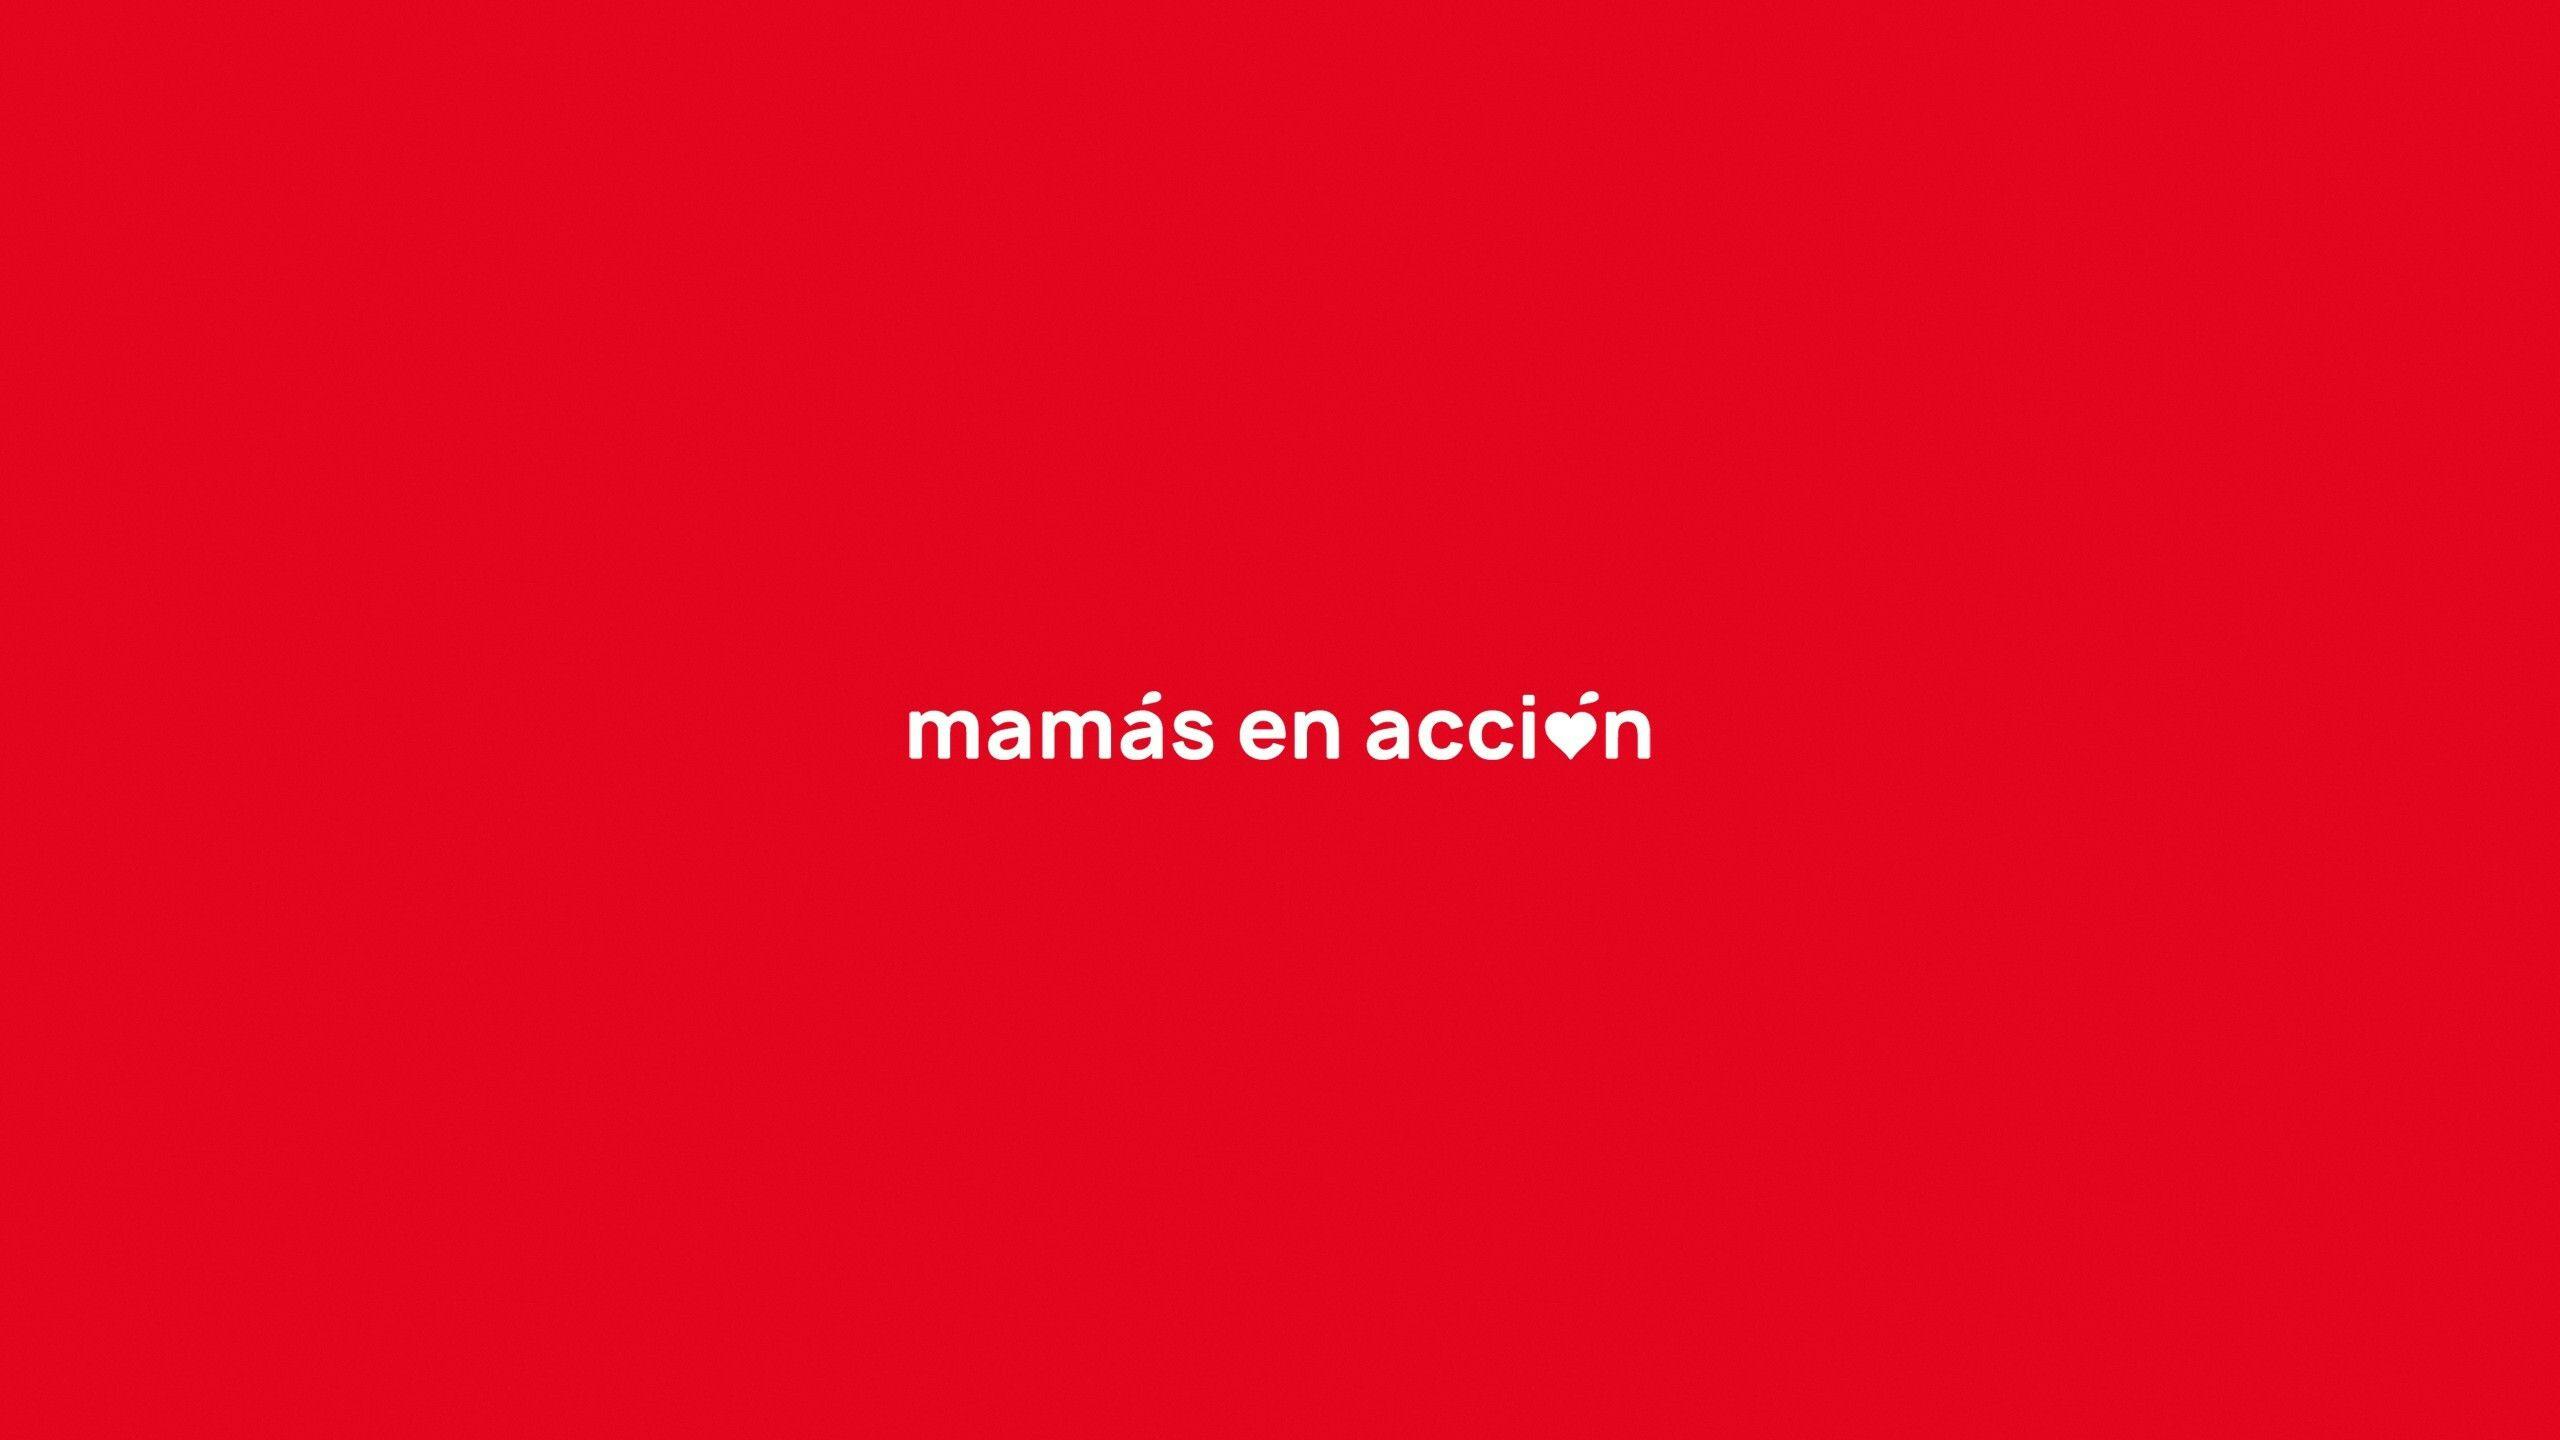 A success story with Mamás en Acción